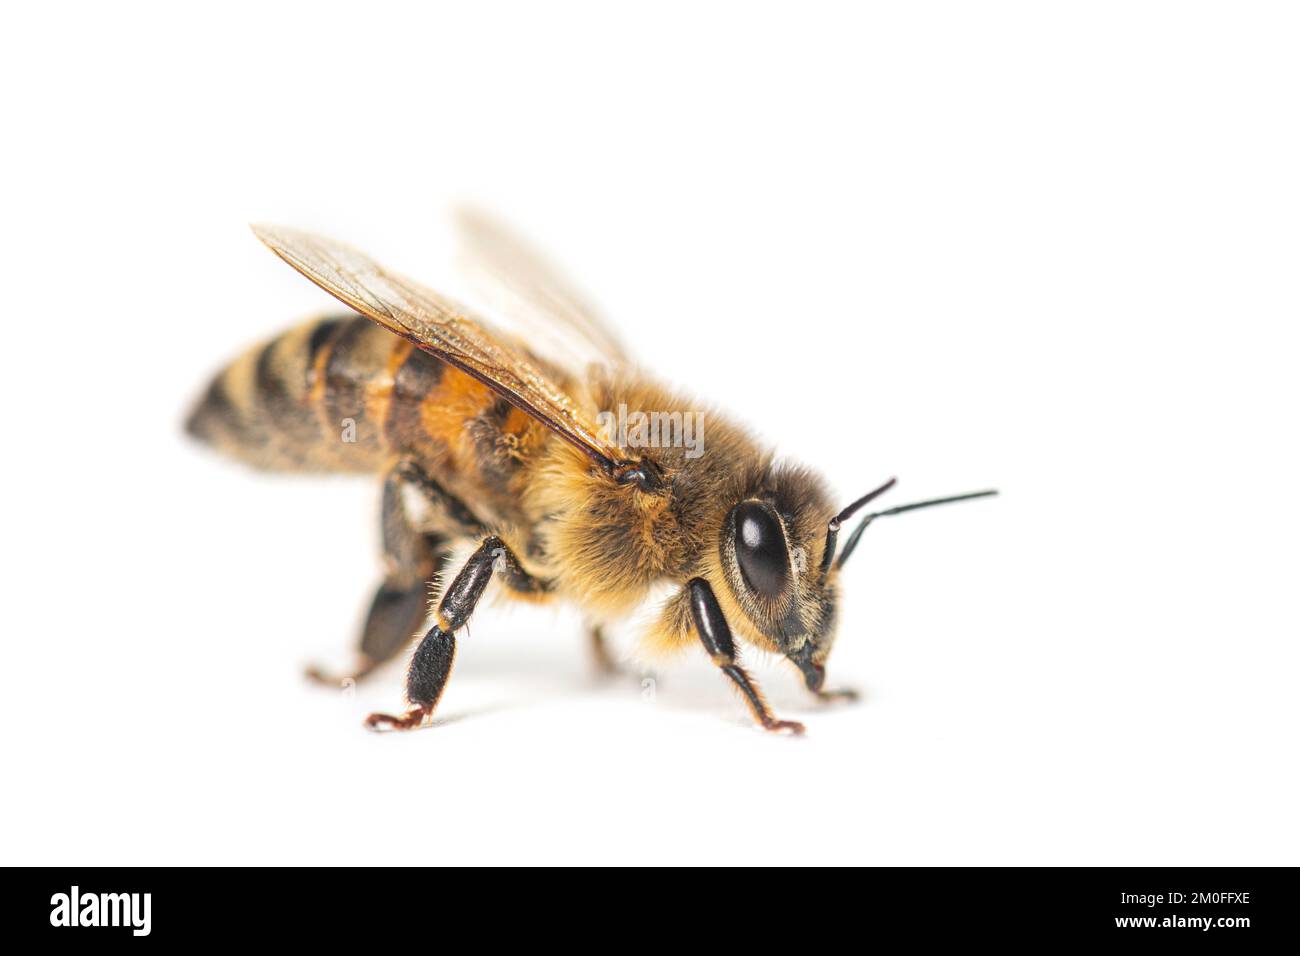 Vue latérale d'une abeille robeuse, apis mellifera, isolée sur blanc Banque D'Images